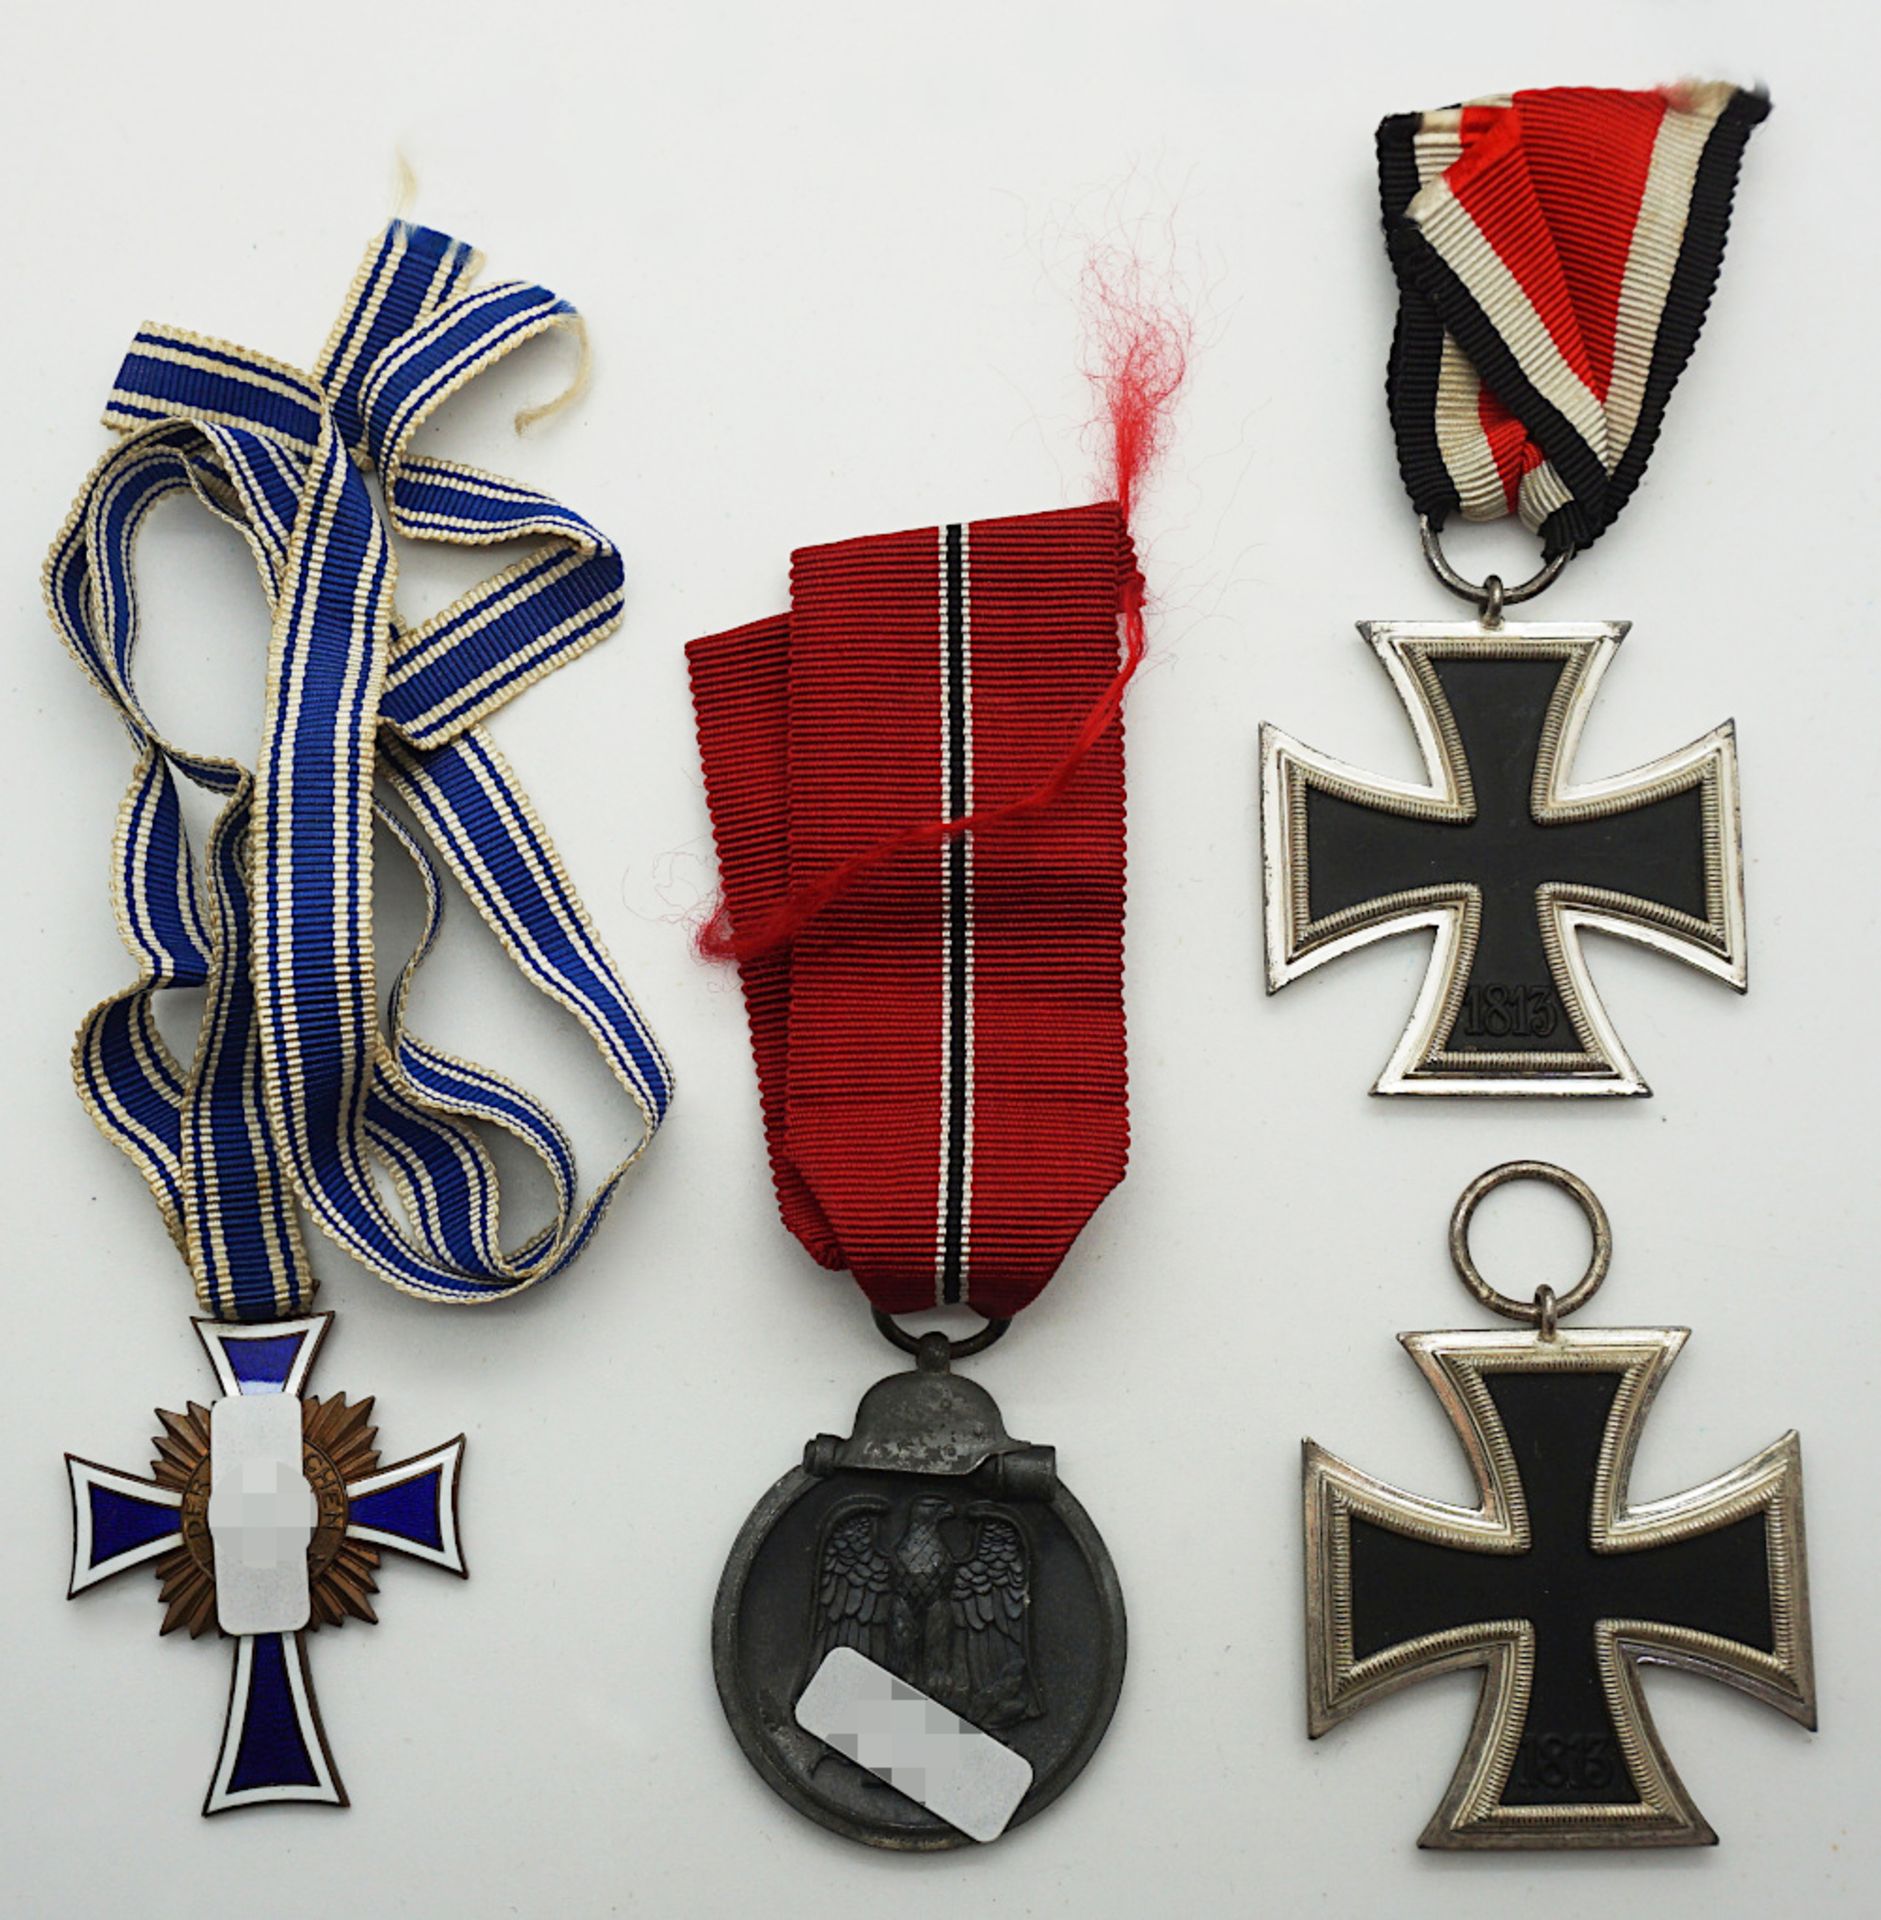 1 Konv. Orden/Abzeichen 2. WK Mutterkreuz/"Schlacht im Osten" u.a. (s. §§ 86/86a StG